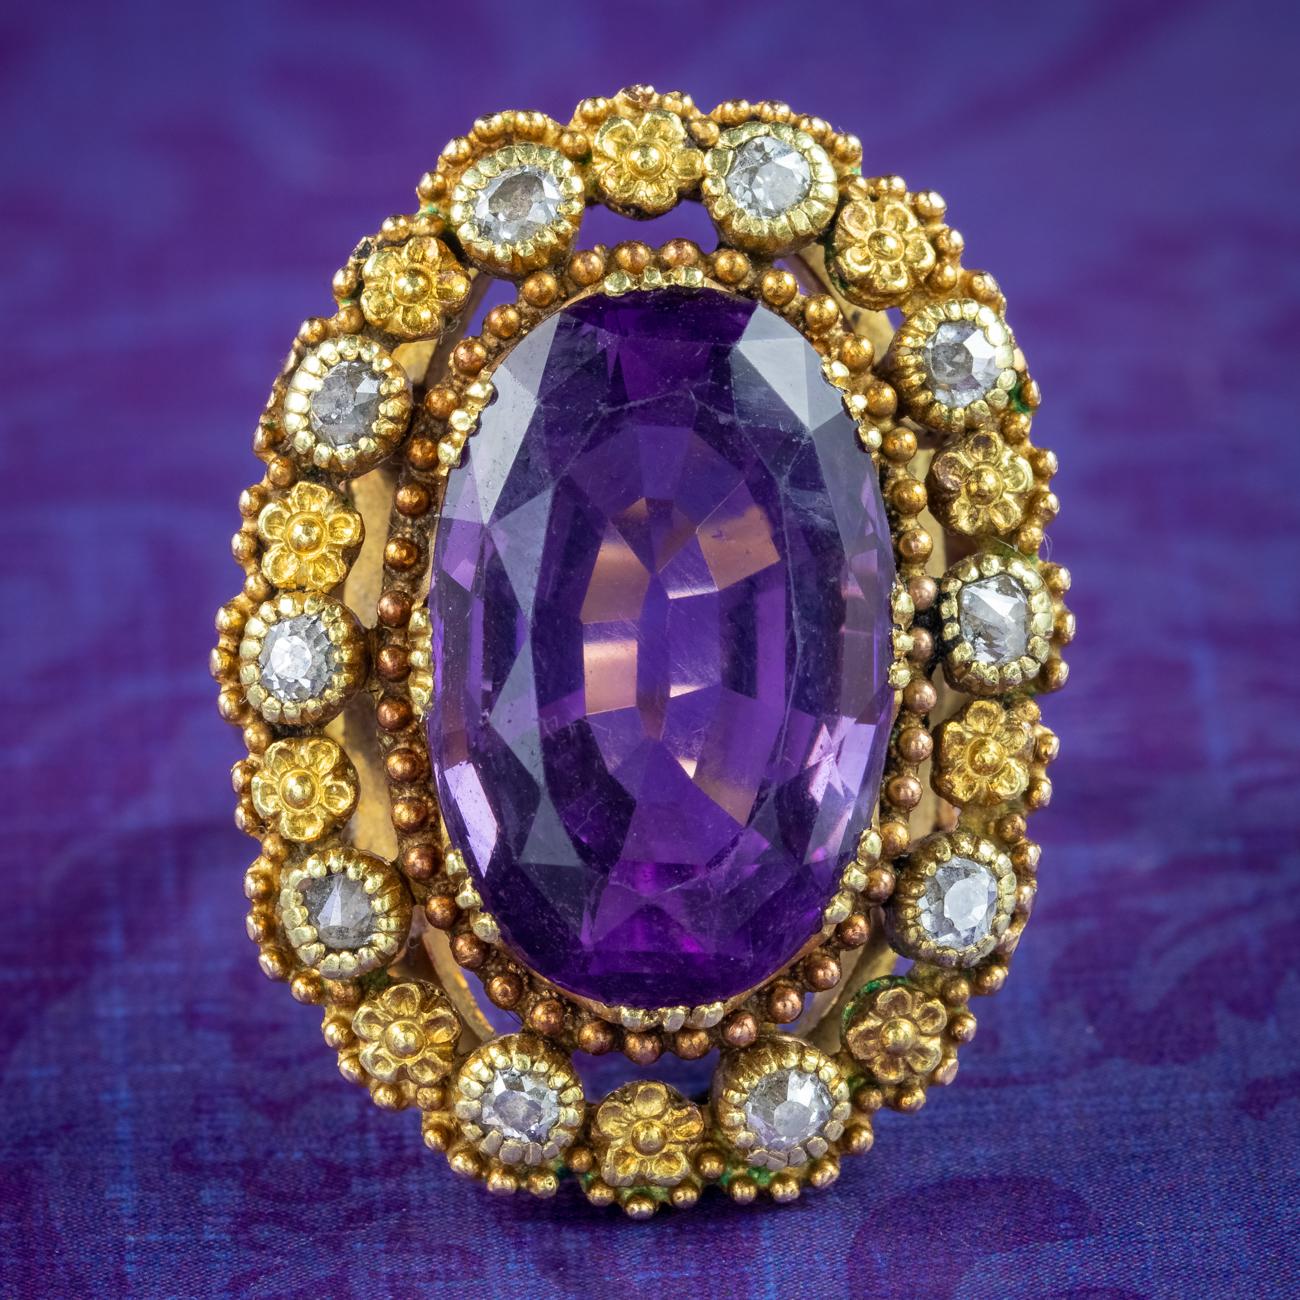 Ein beeindruckender, antiker, viktorianischer Ring mit einem großen, oval geschliffenen Amethysten in der Mitte, der ca. 7,2 Karat wiegt. Er hat einen tiefen, königlichen violetten Farbton und ist in eine verzierte Galerie im Cannetille-Stil